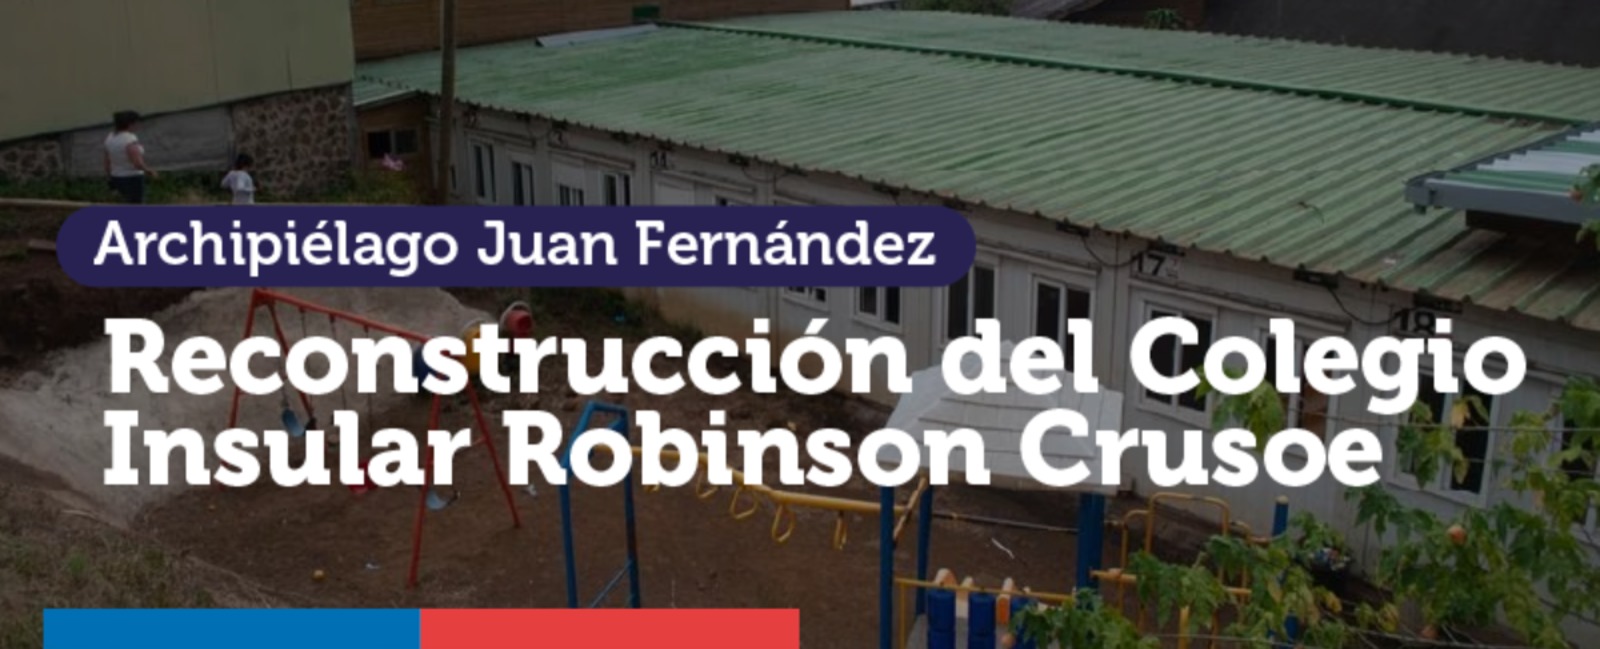 Archipiélago Juan Fernández ya cuenta con terreno para la construcción definitiva de la escuela que fue arrasada por el tsunami